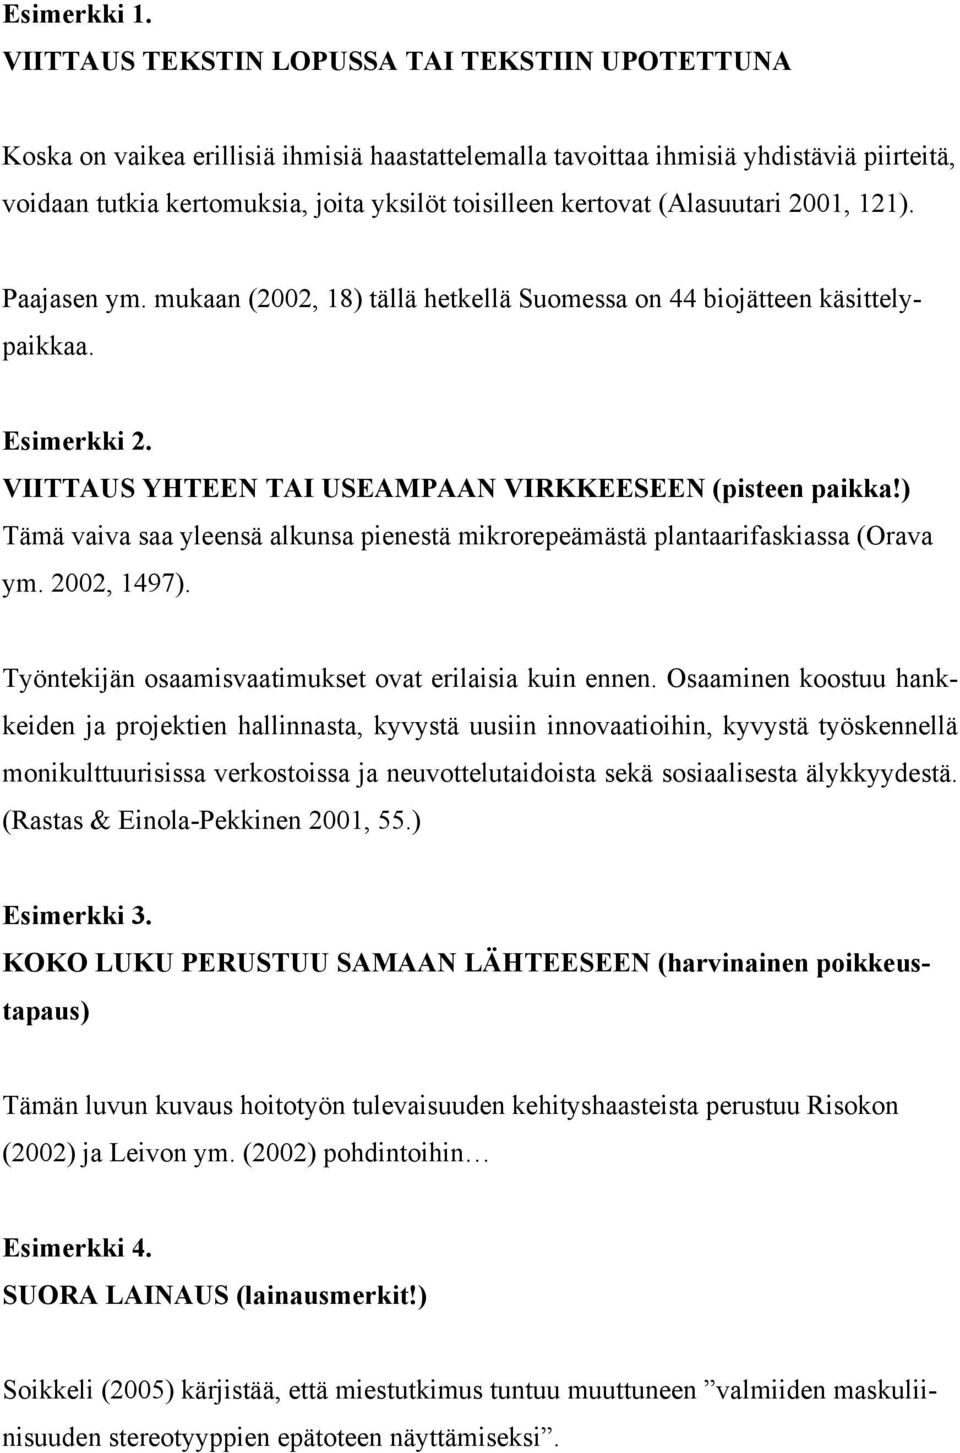 kertovat (Alasuutari 2001, 121). Paajasen ym. mukaan (2002, 18) tällä hetkellä Suomessa on 44 biojätteen käsittelypaikkaa. Esimerkki 2. VIITTAUS YHTEEN TAI USEAMPAAN VIRKKEESEEN (pisteen paikka!